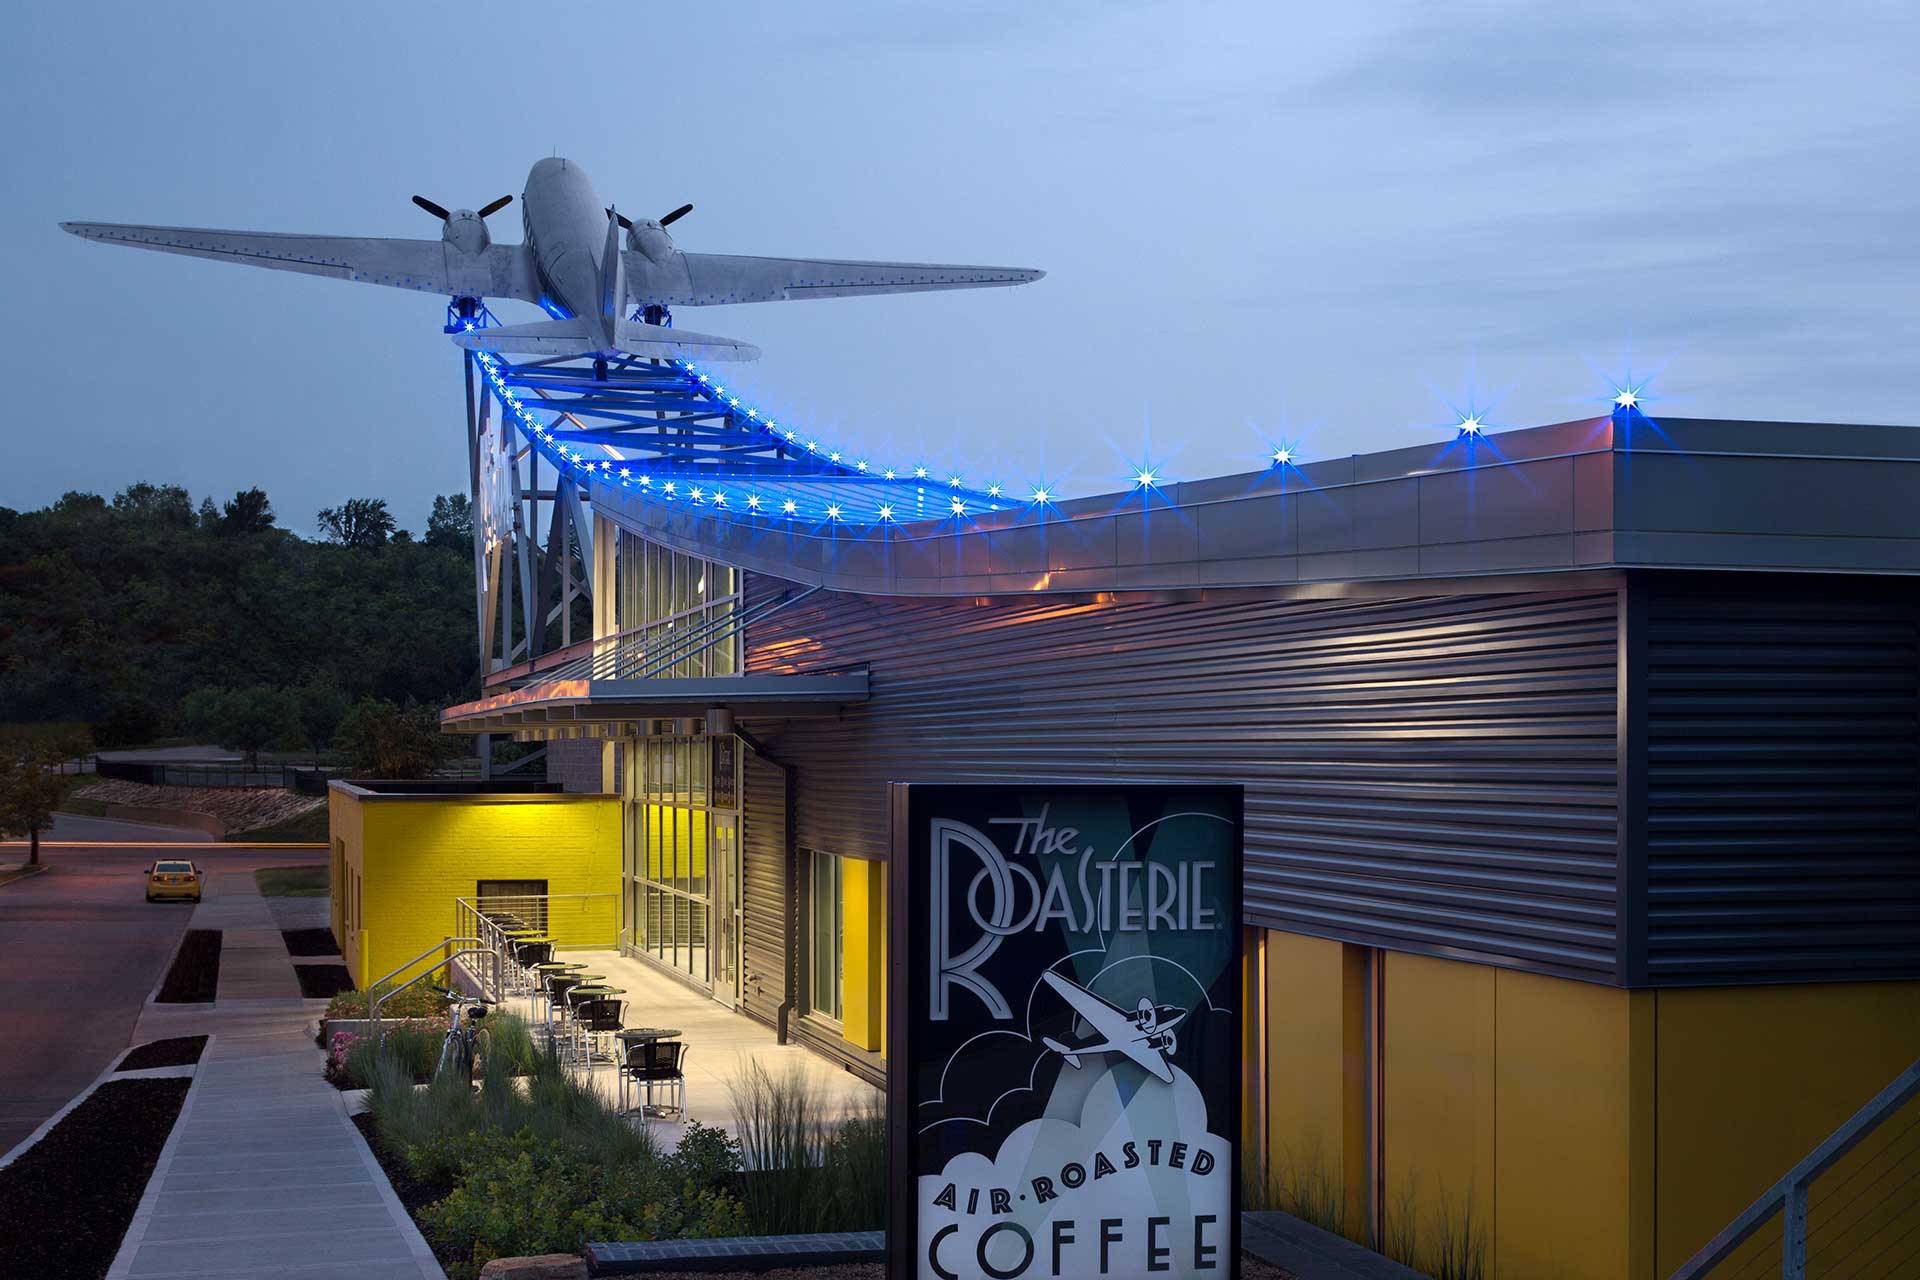 La fabbrica di Roasterie (Kansas City) con un aereo a doppia elica integrato nel design del tetto